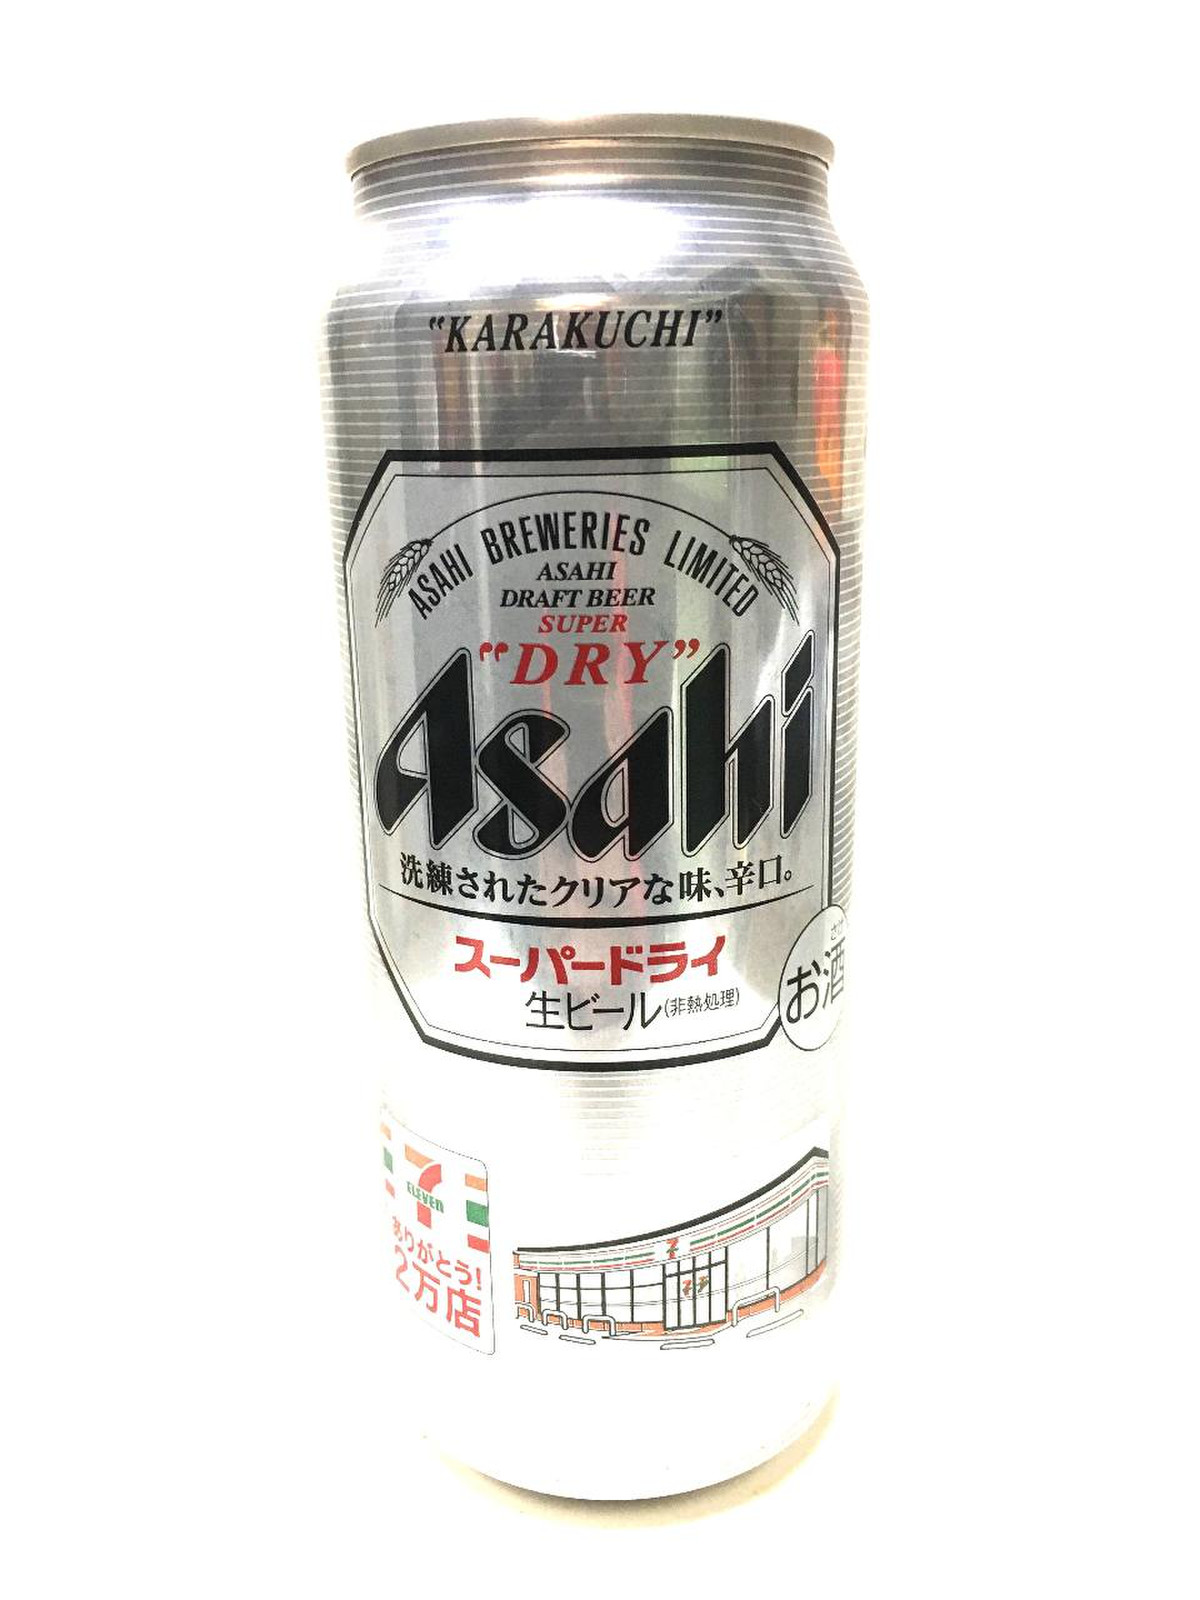 高評価 アサヒ スーパードライ セブンイレブン2万店達成記念缶 缶500ml 製造終了 のクチコミ 評価 商品情報 もぐナビ